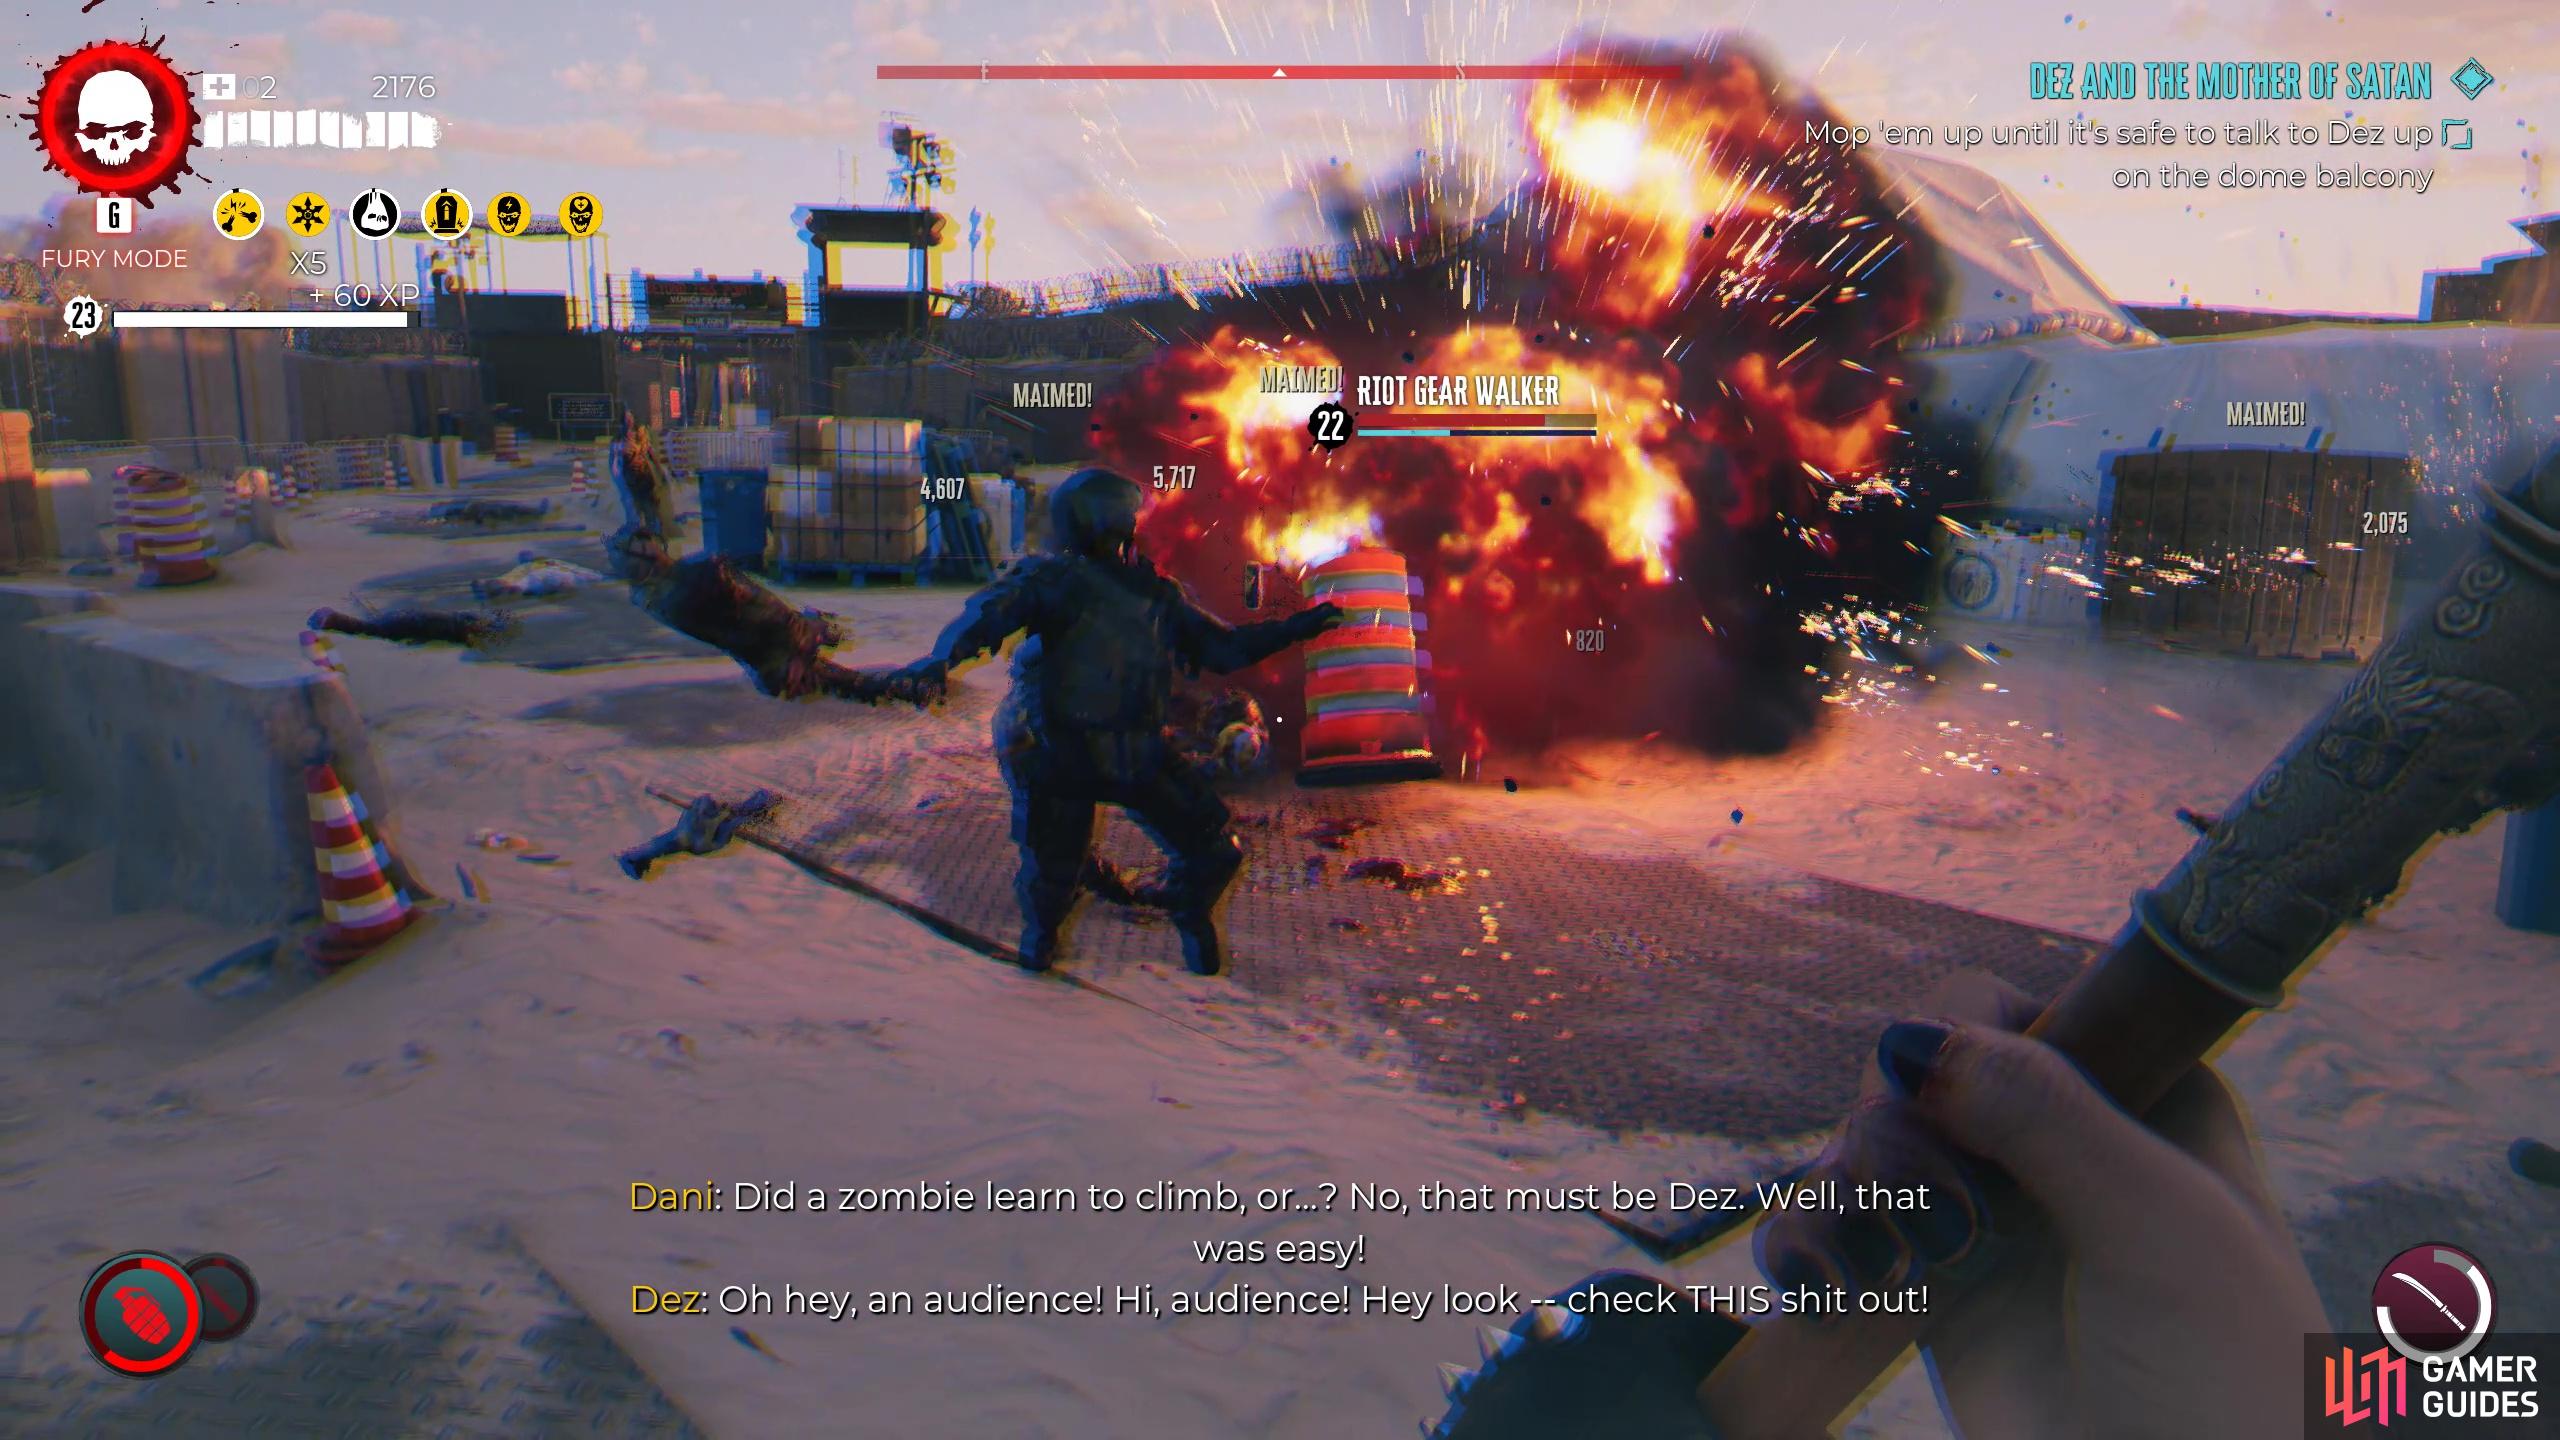 Use explosives to do AoE damage!